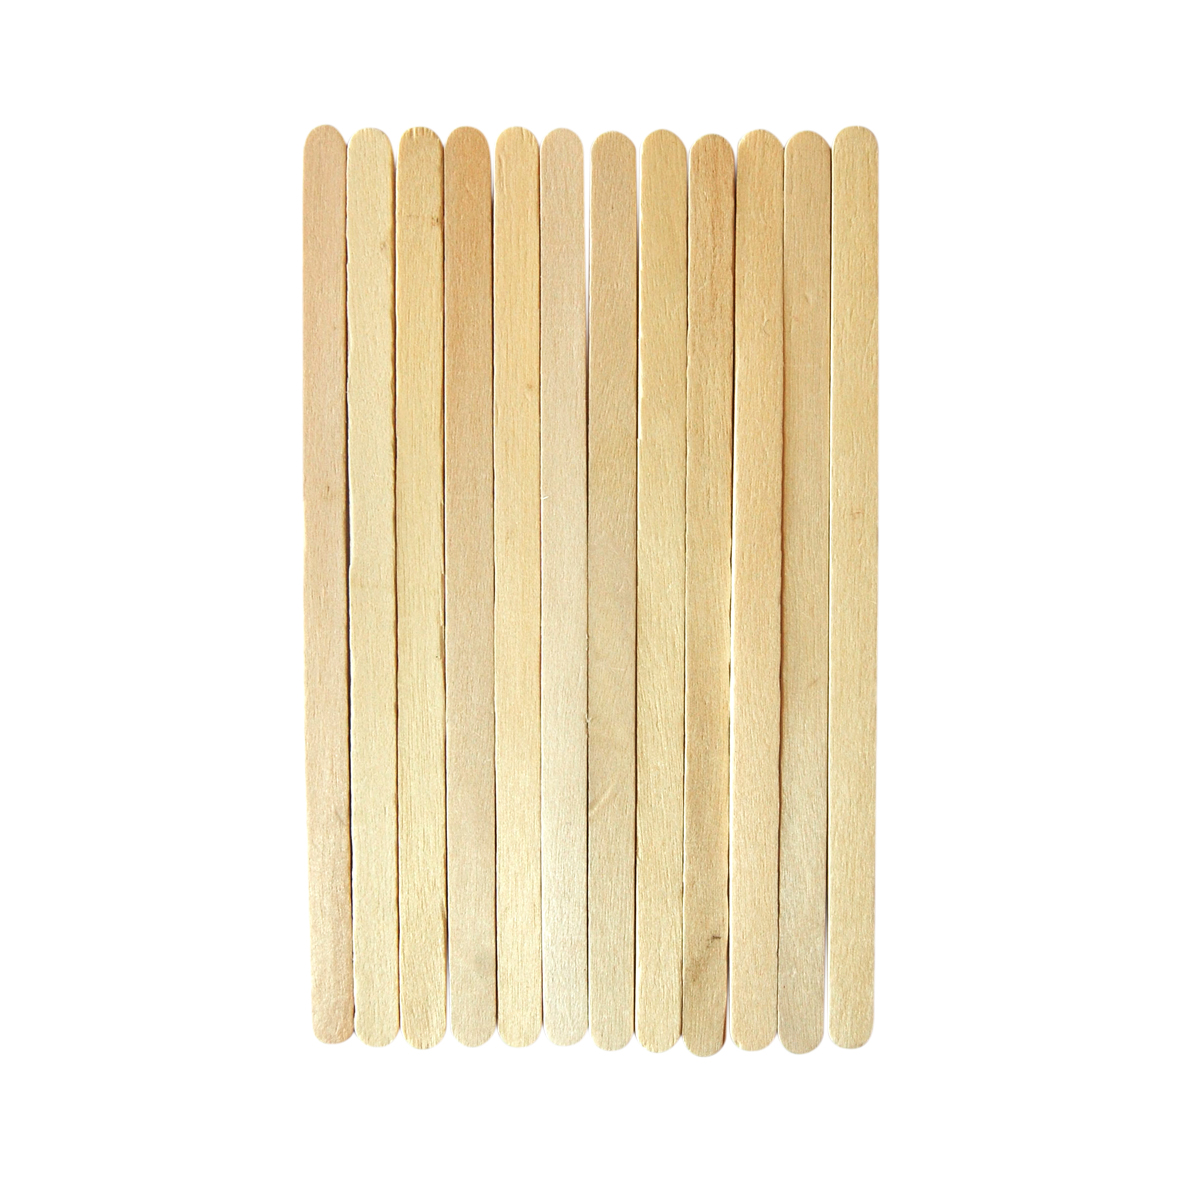 Wooden Stir Sticks, 14 cm